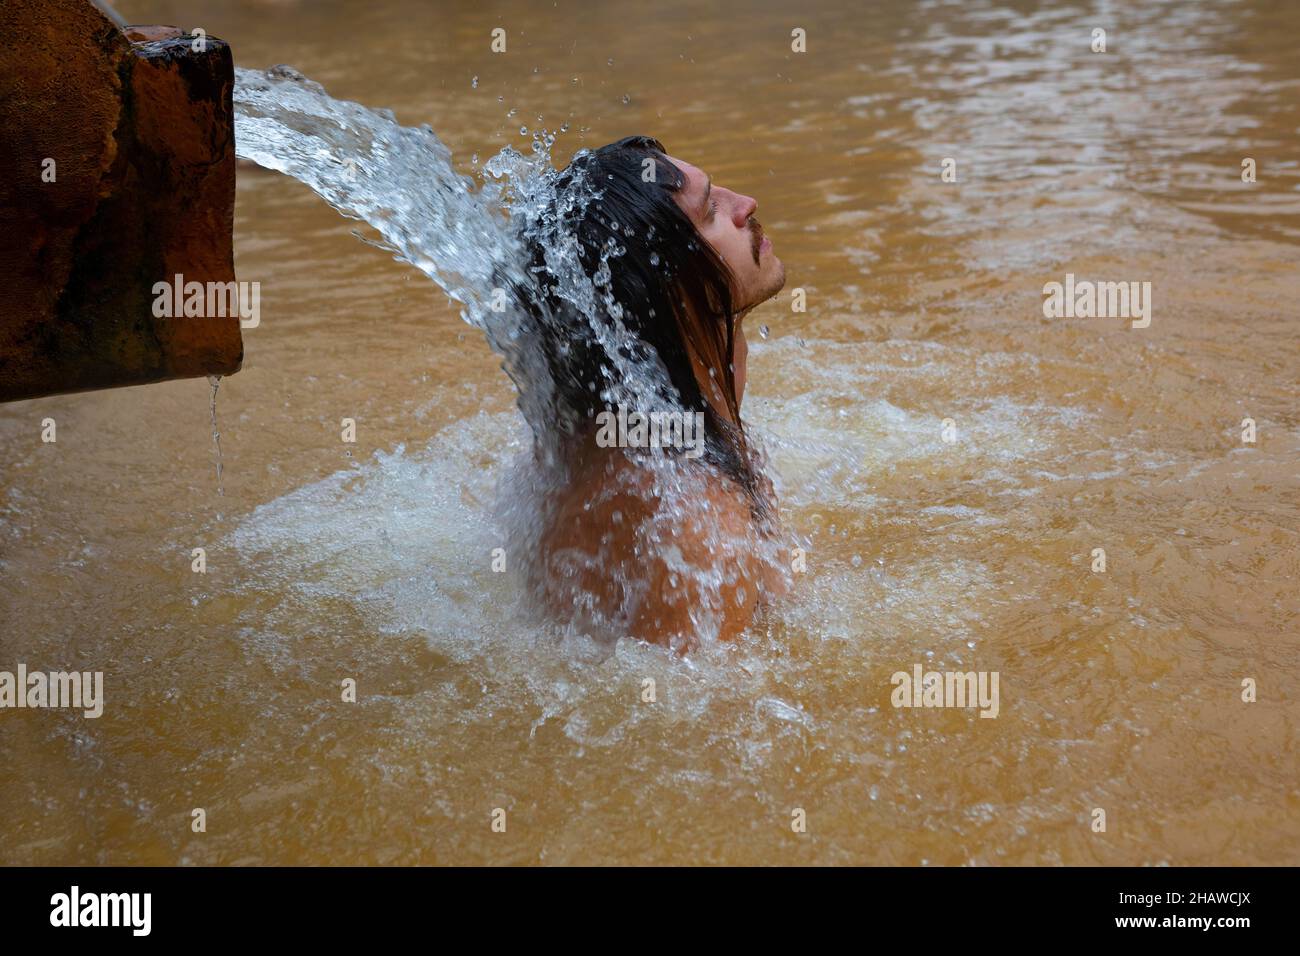 Giardino botanico, uomo sotto il getto d'acqua in piscina di acqua termale nel Parco Terra nostra, Furnas, Isola di Sao Miguel, Azzorre, Portogallo Foto Stock